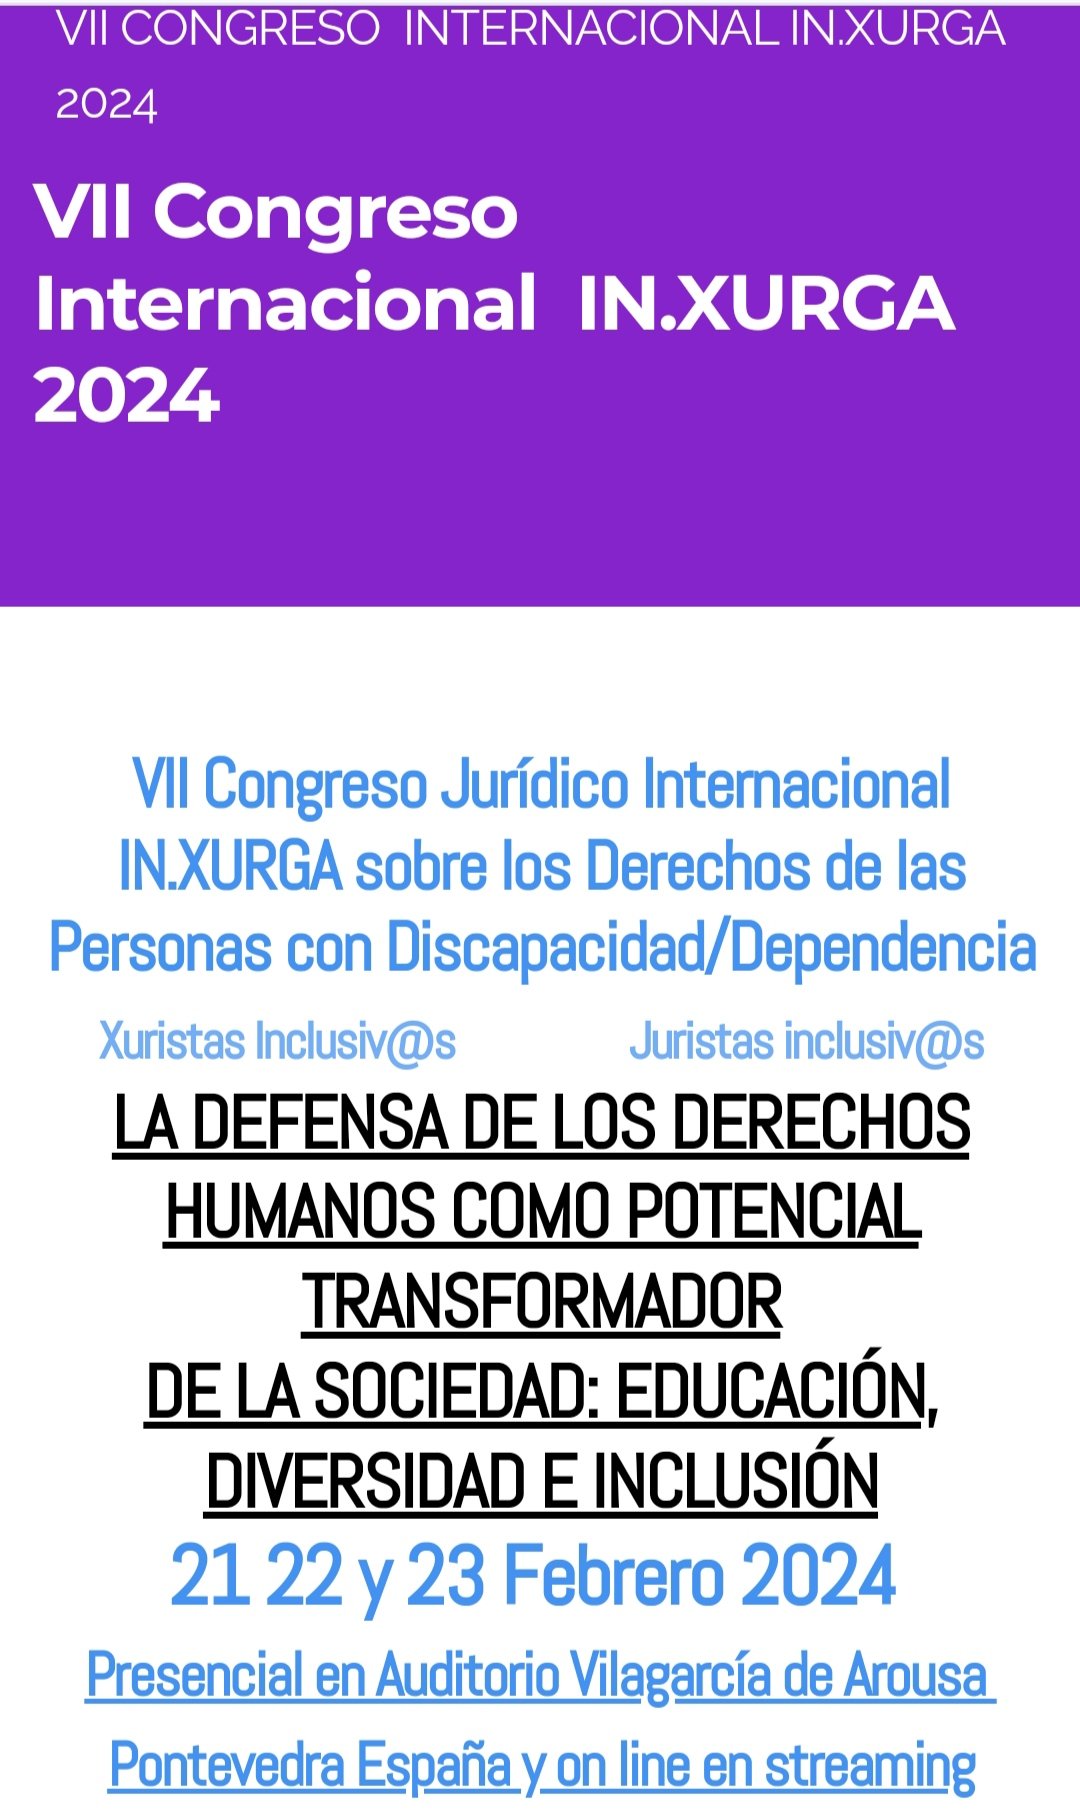 VII Congreso Jurídico Internacional IN.XURGA sobre los Derechos de las Personas con Discapacidad/Dependencia